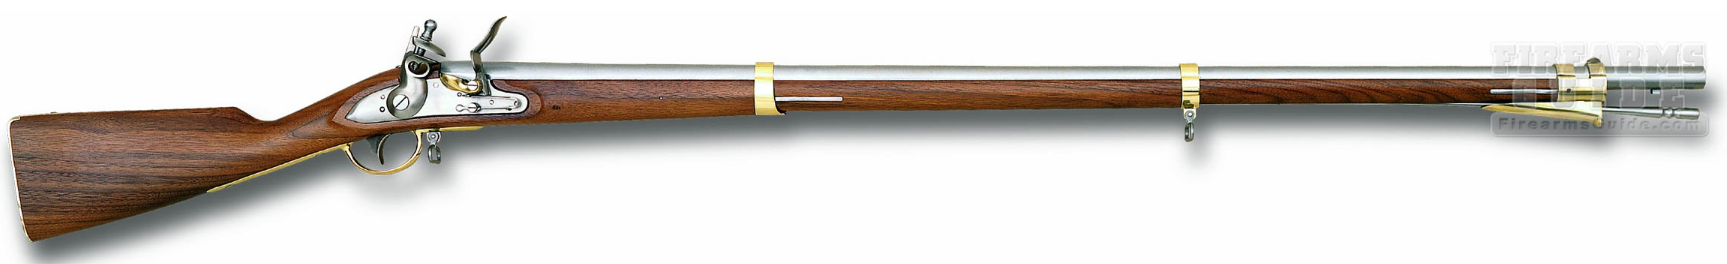 Pedersoli Austrian 1798 Standard Flintlock